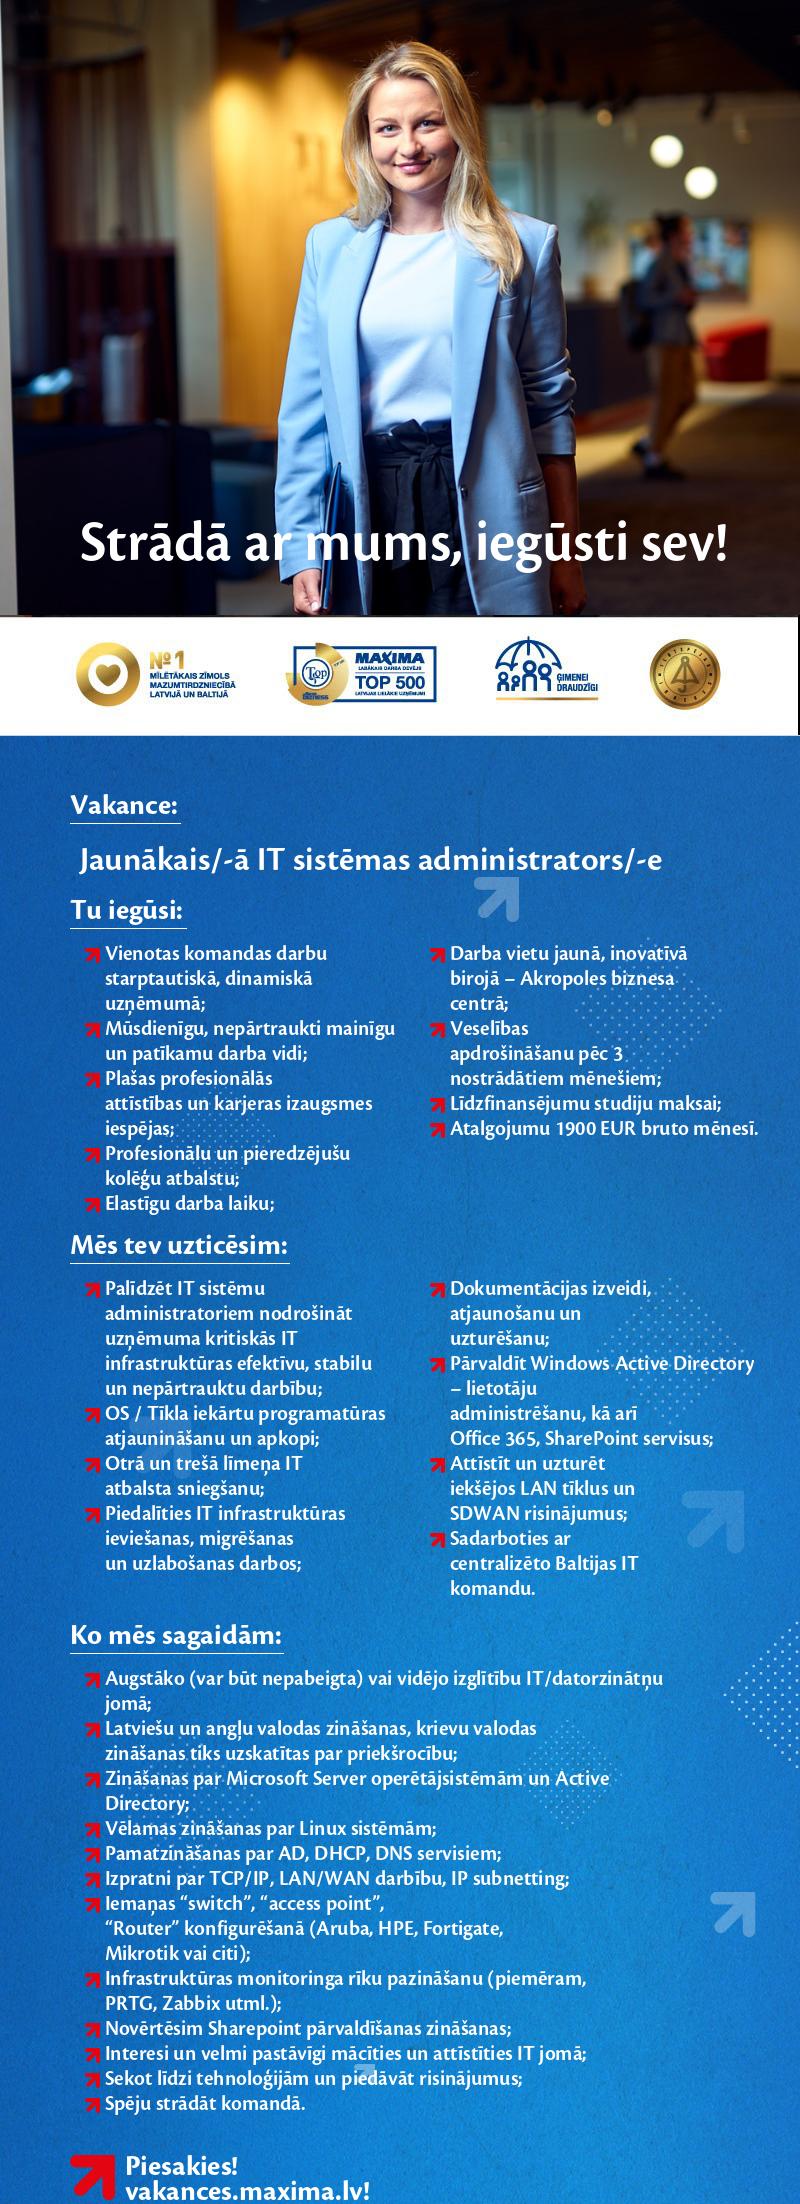 MAXIMA Latvija Jaunākais/-ā IT sistēmas administrators/-e